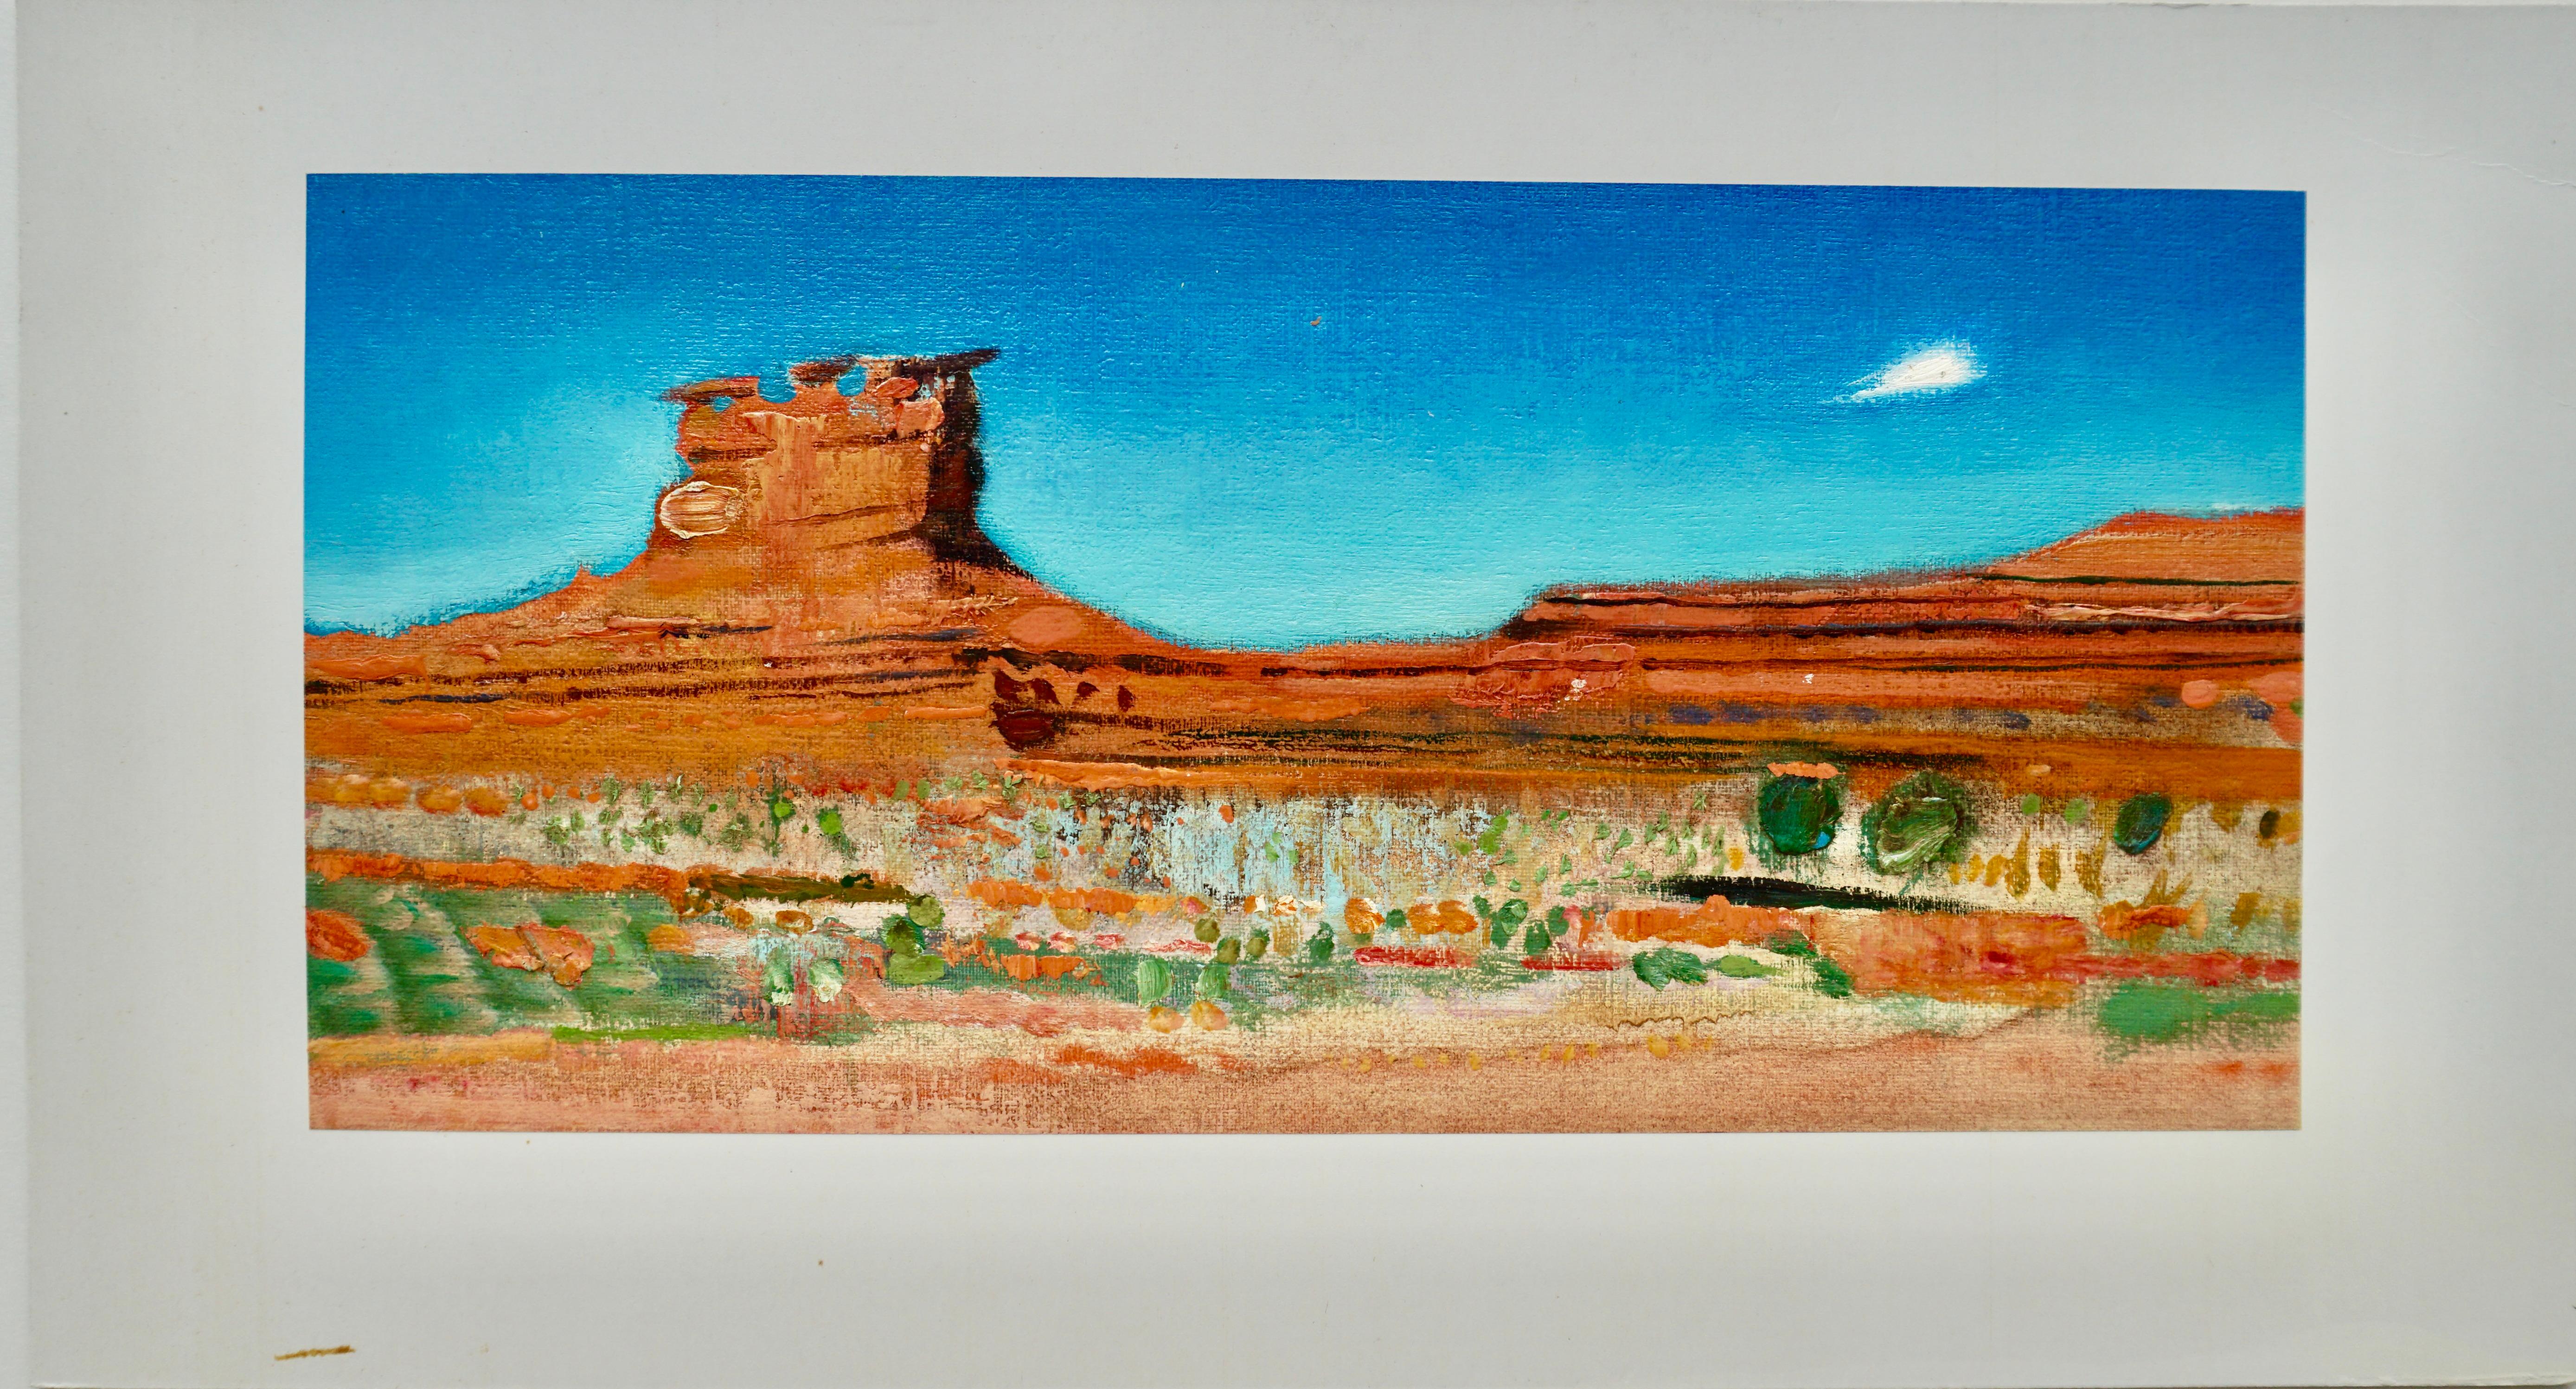 René Genis Landscape Painting – "Monument Valley" 